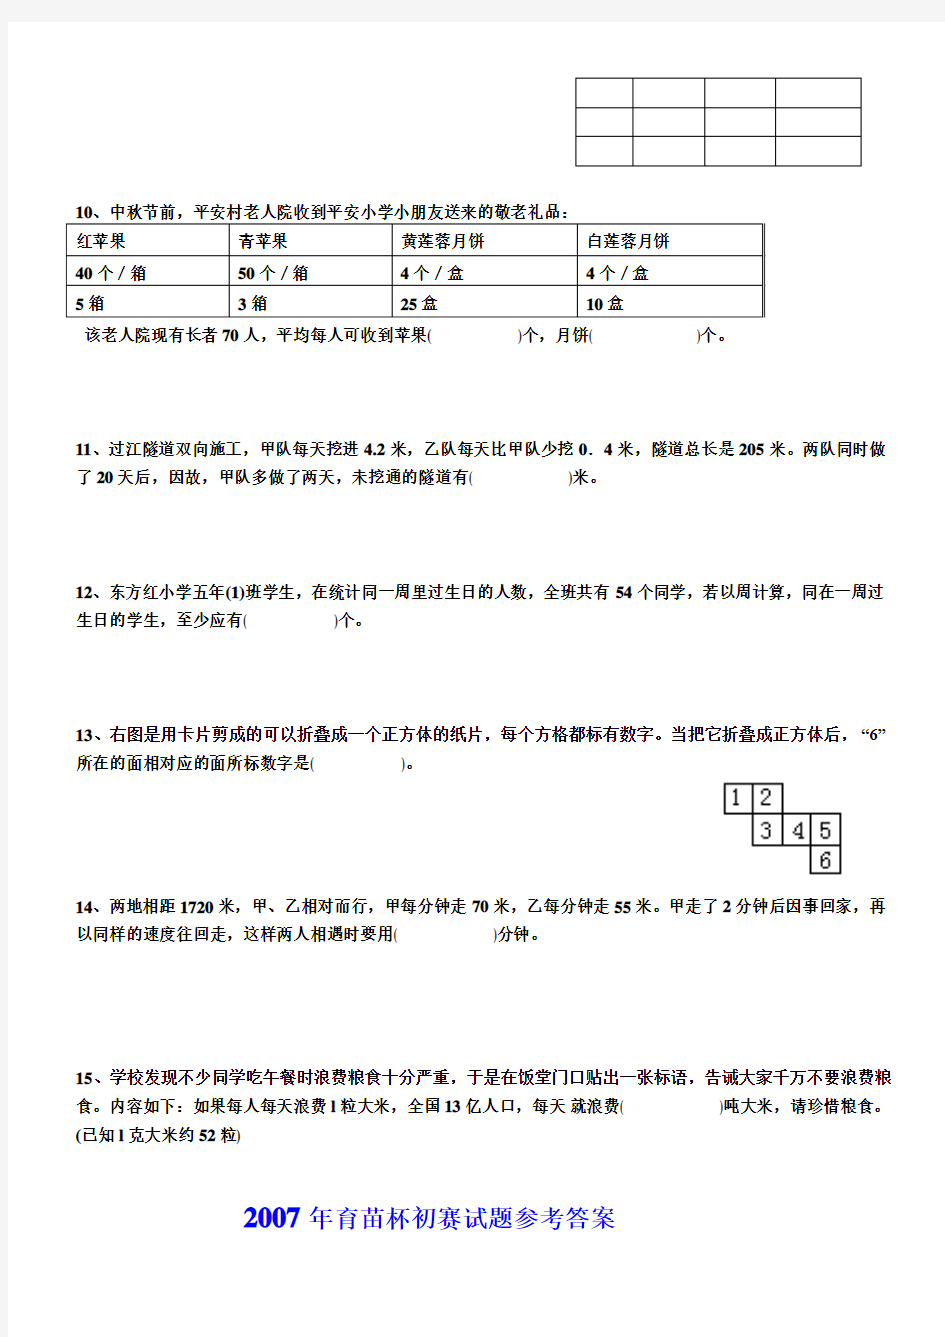 2007年广东省小学数学育苗杯初赛复赛试题及答案